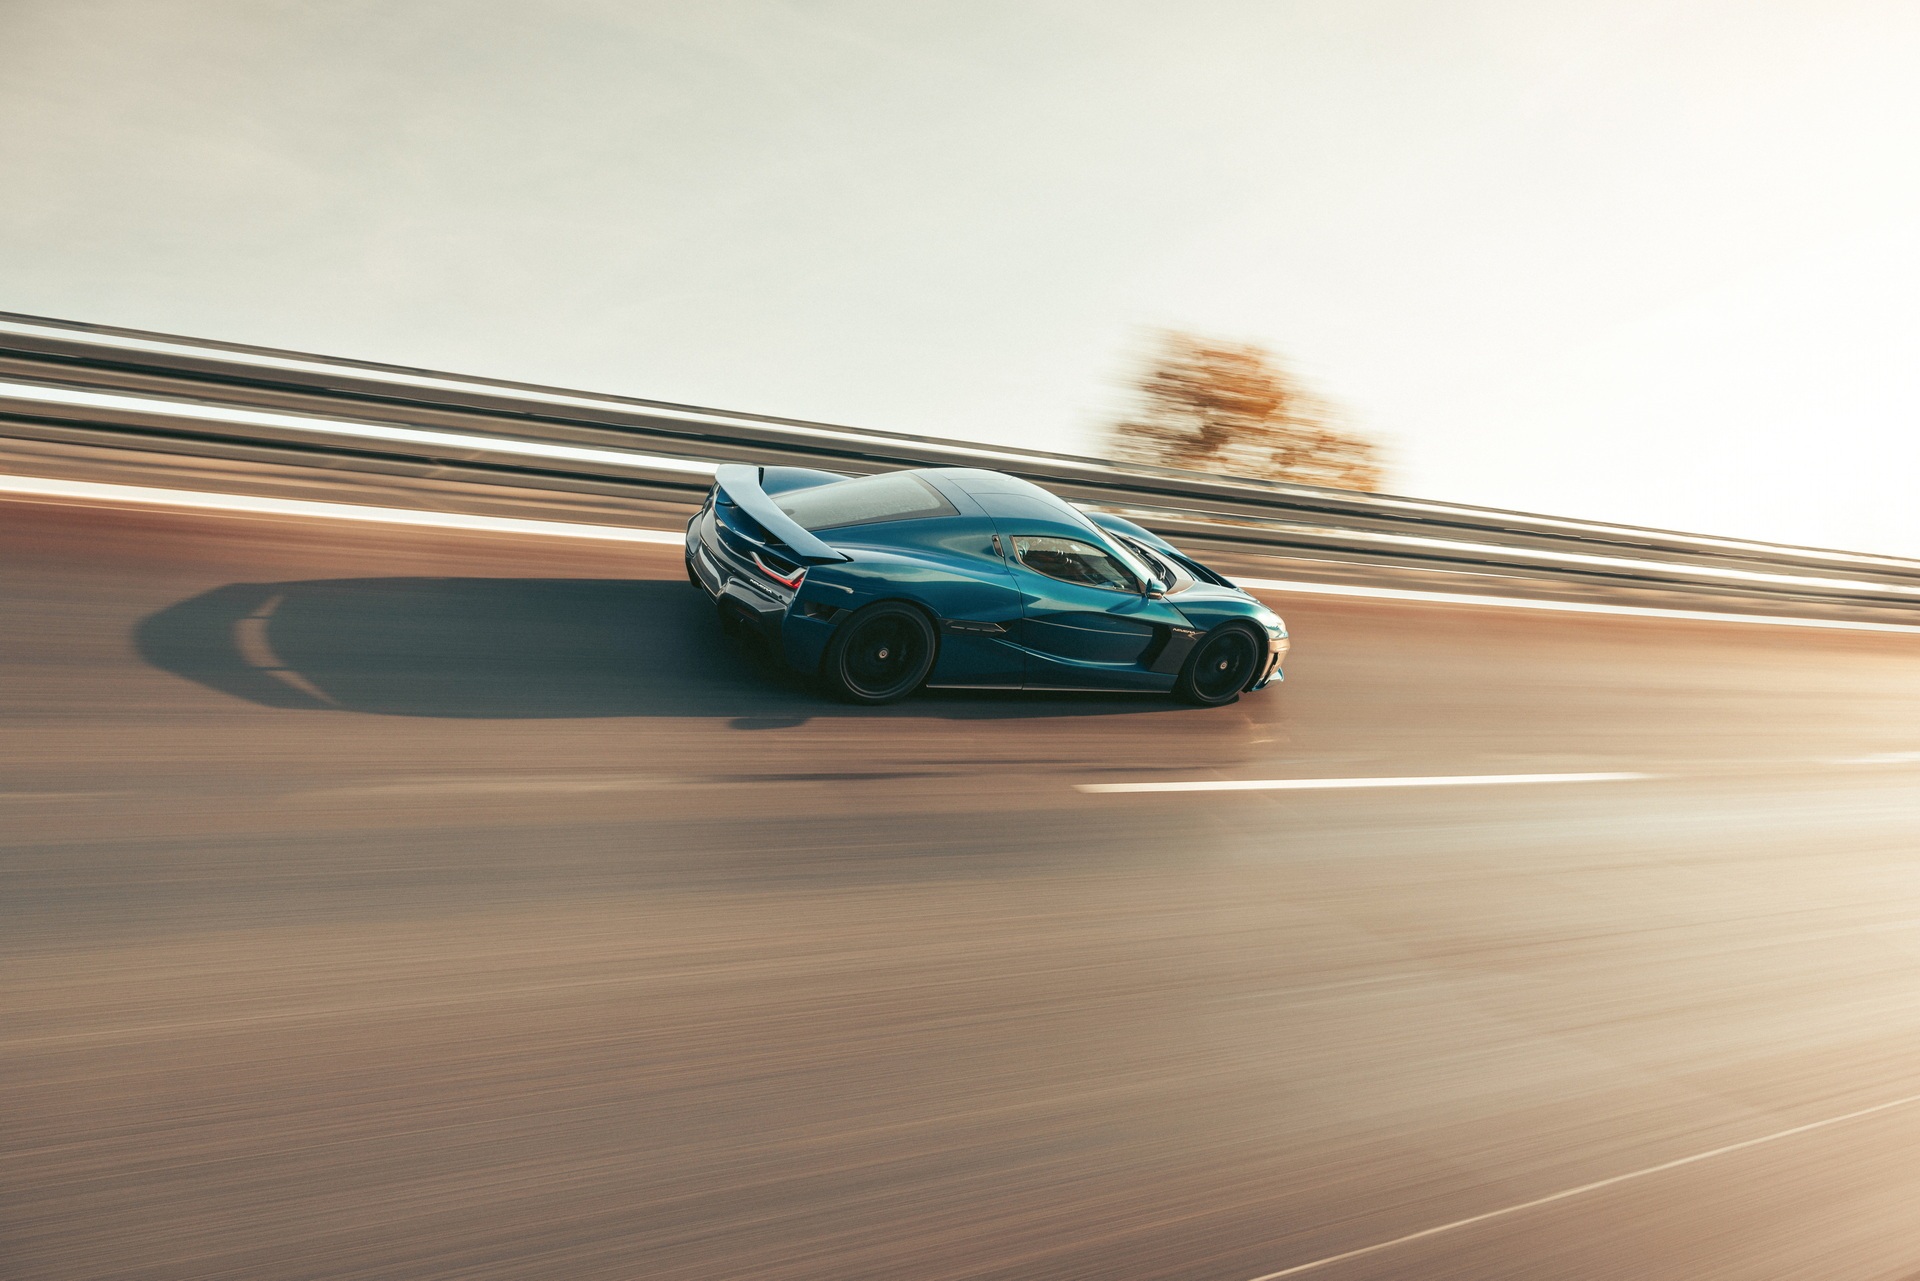 Siêu xe điện nhanh nhất thế giới có giá hơn 2 triệu USD, tốc độ vượt Bugatti Veyron